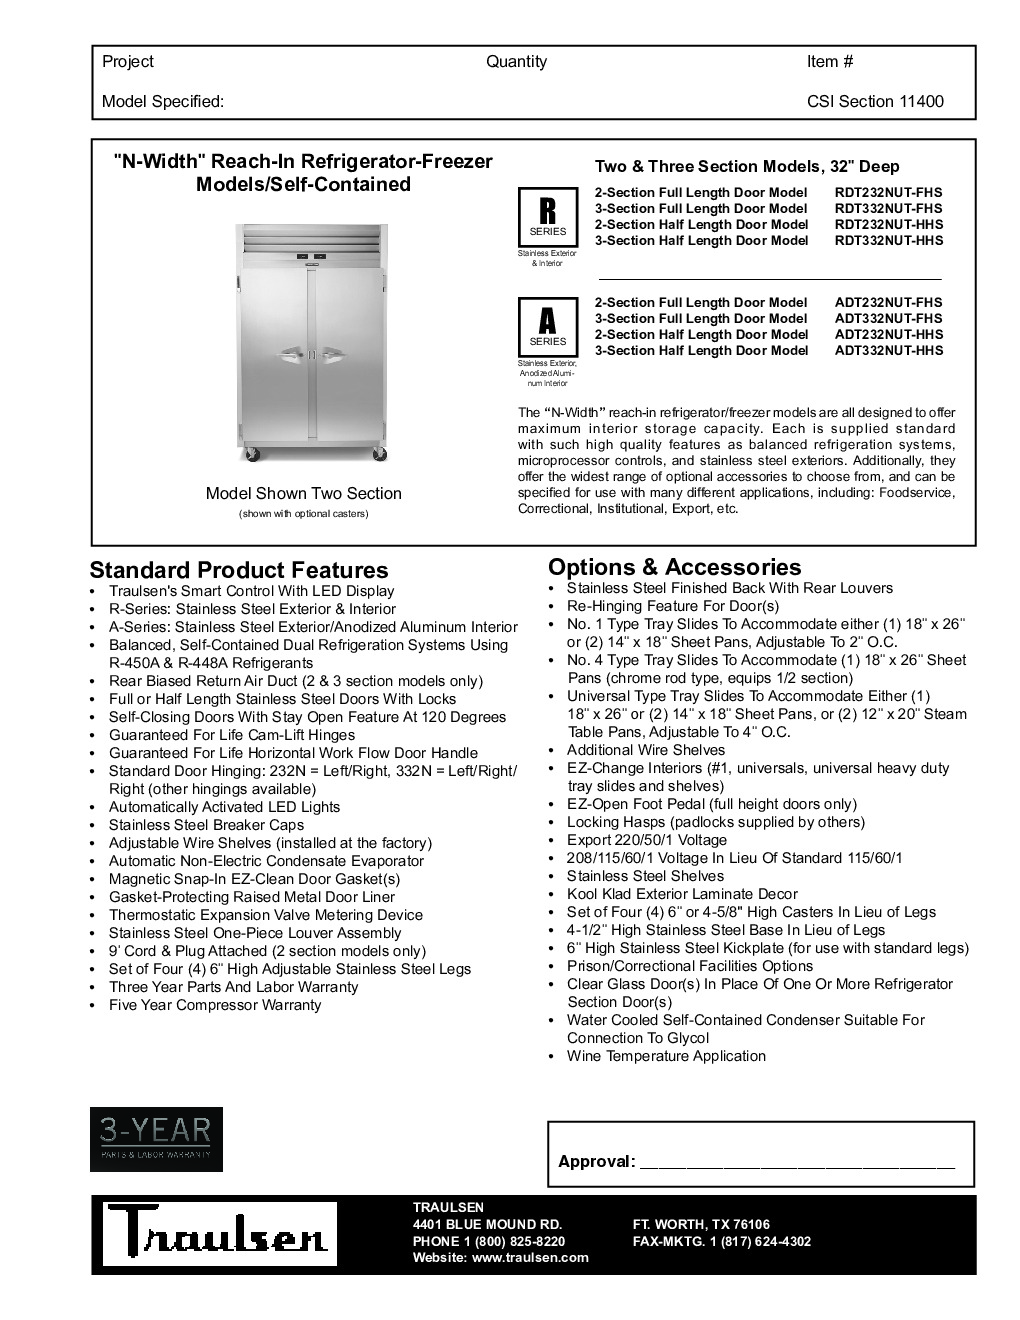 Traulsen ADT232NUT-HHS Reach-In Refrigerator Freezer